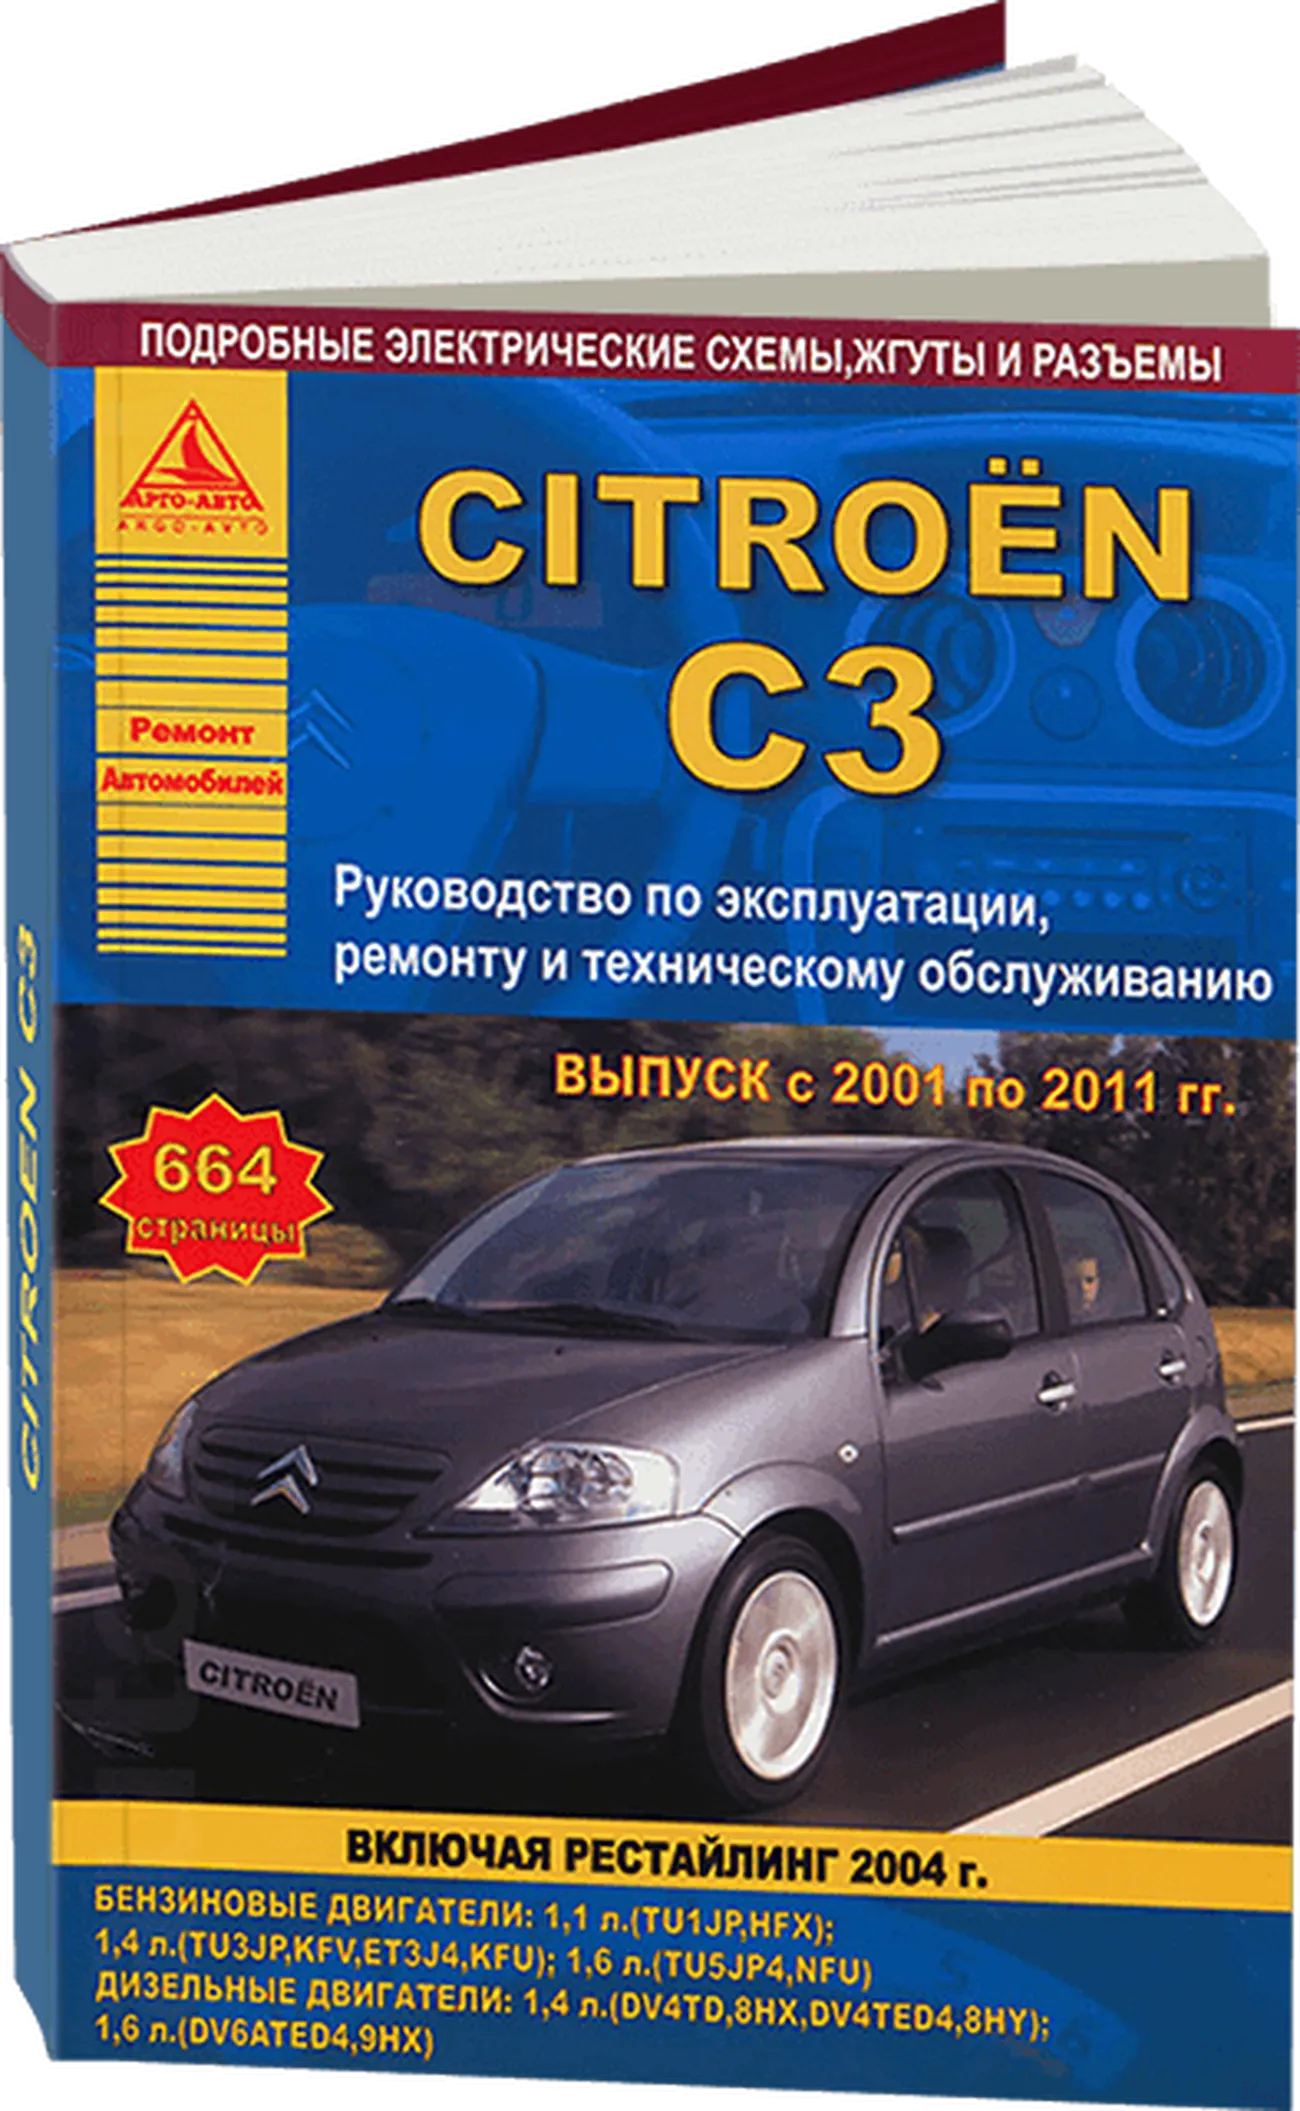 Книга: CITROEN C3 (б , д) 2001-2011 г.в., включая рестайлинг 2004, рем., экспл., то | Арго-Авто